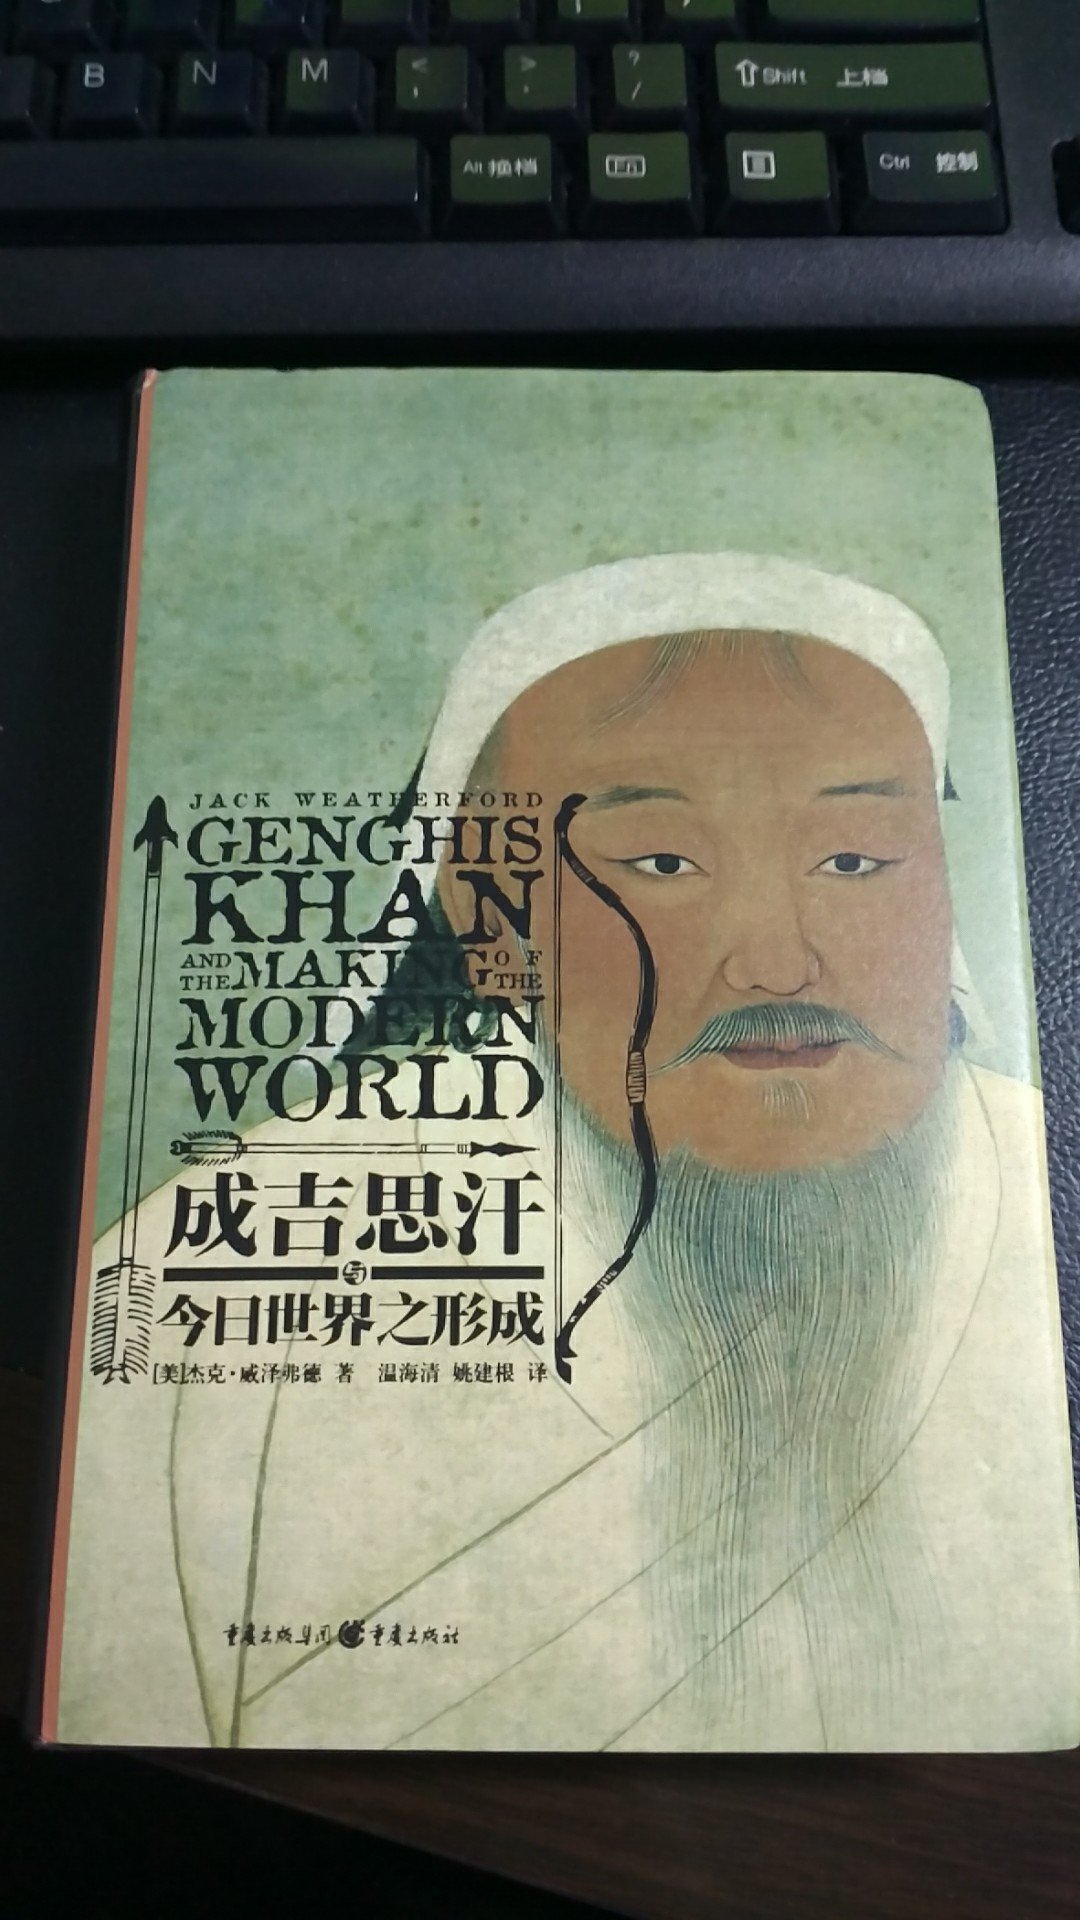 很喜欢这本书，作者是美国默士达大学教授，另一个视角观蒙古历史，很有意义。值得收藏。